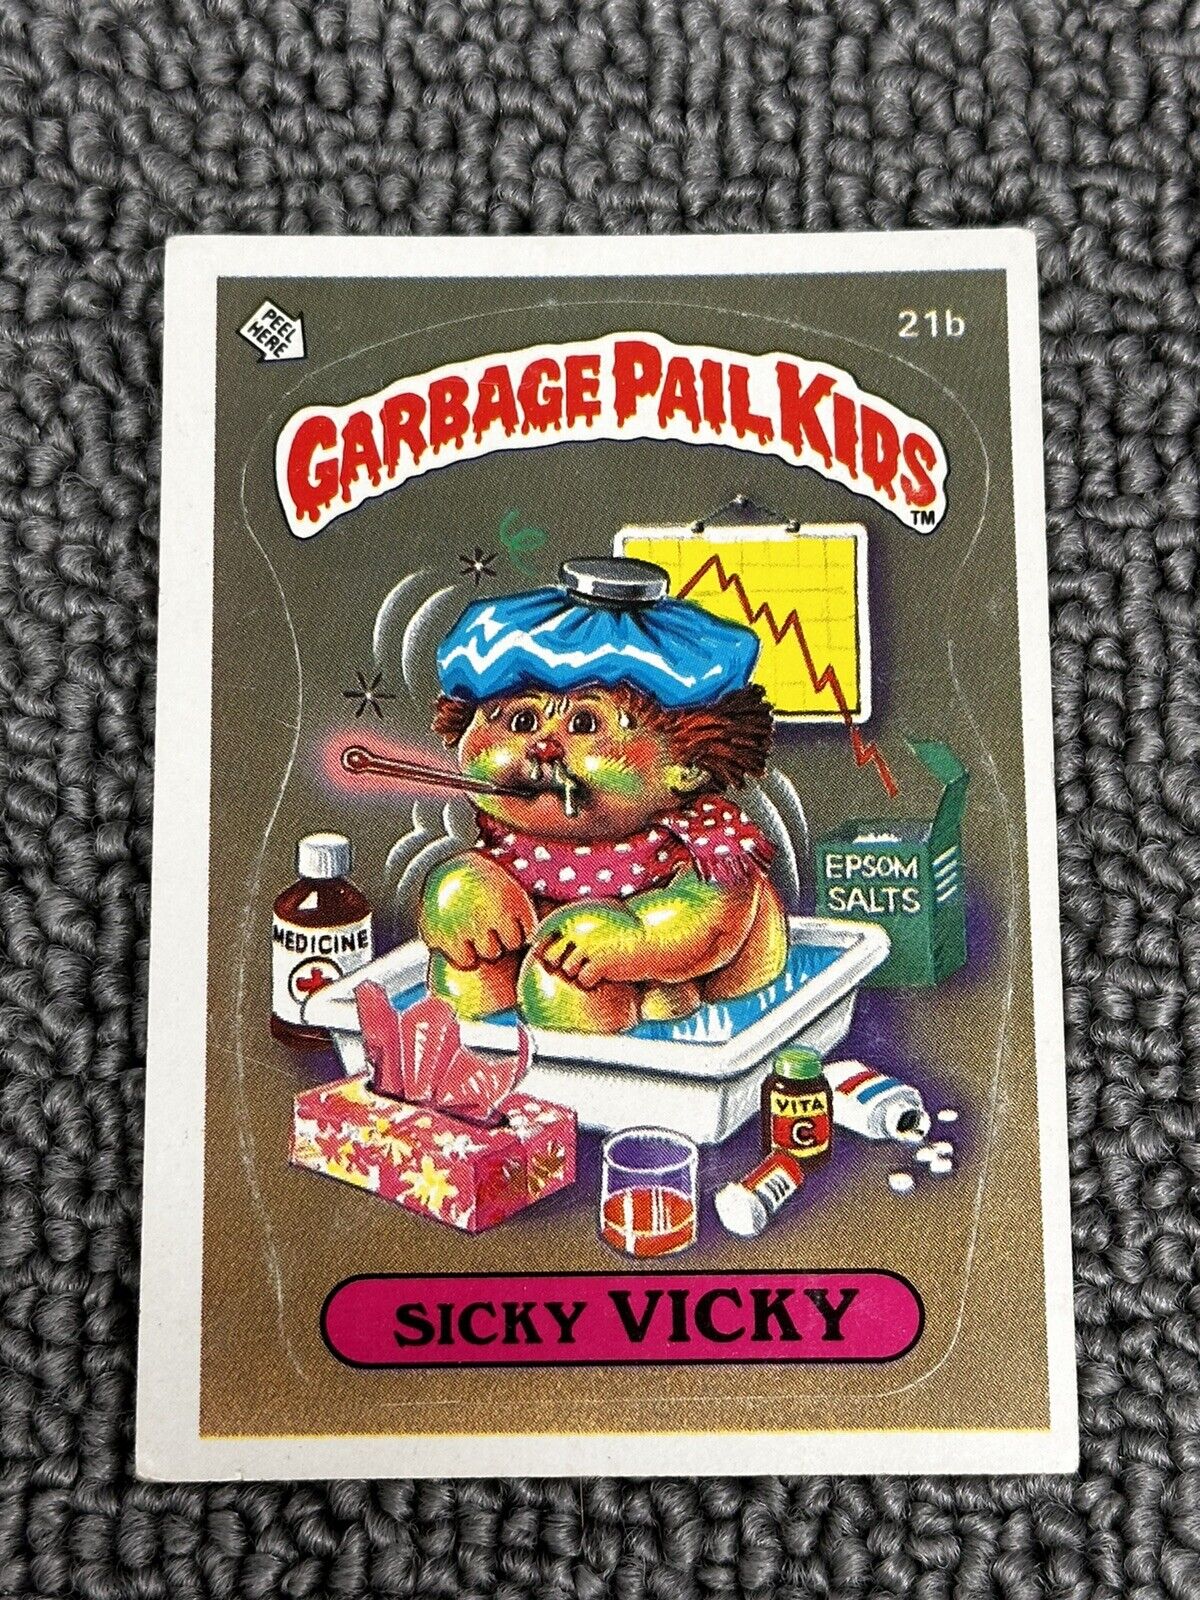 1985 Topps Garbage Pail Kids ~ Sicky Vicky ~ Original Series 1 ~ #21b